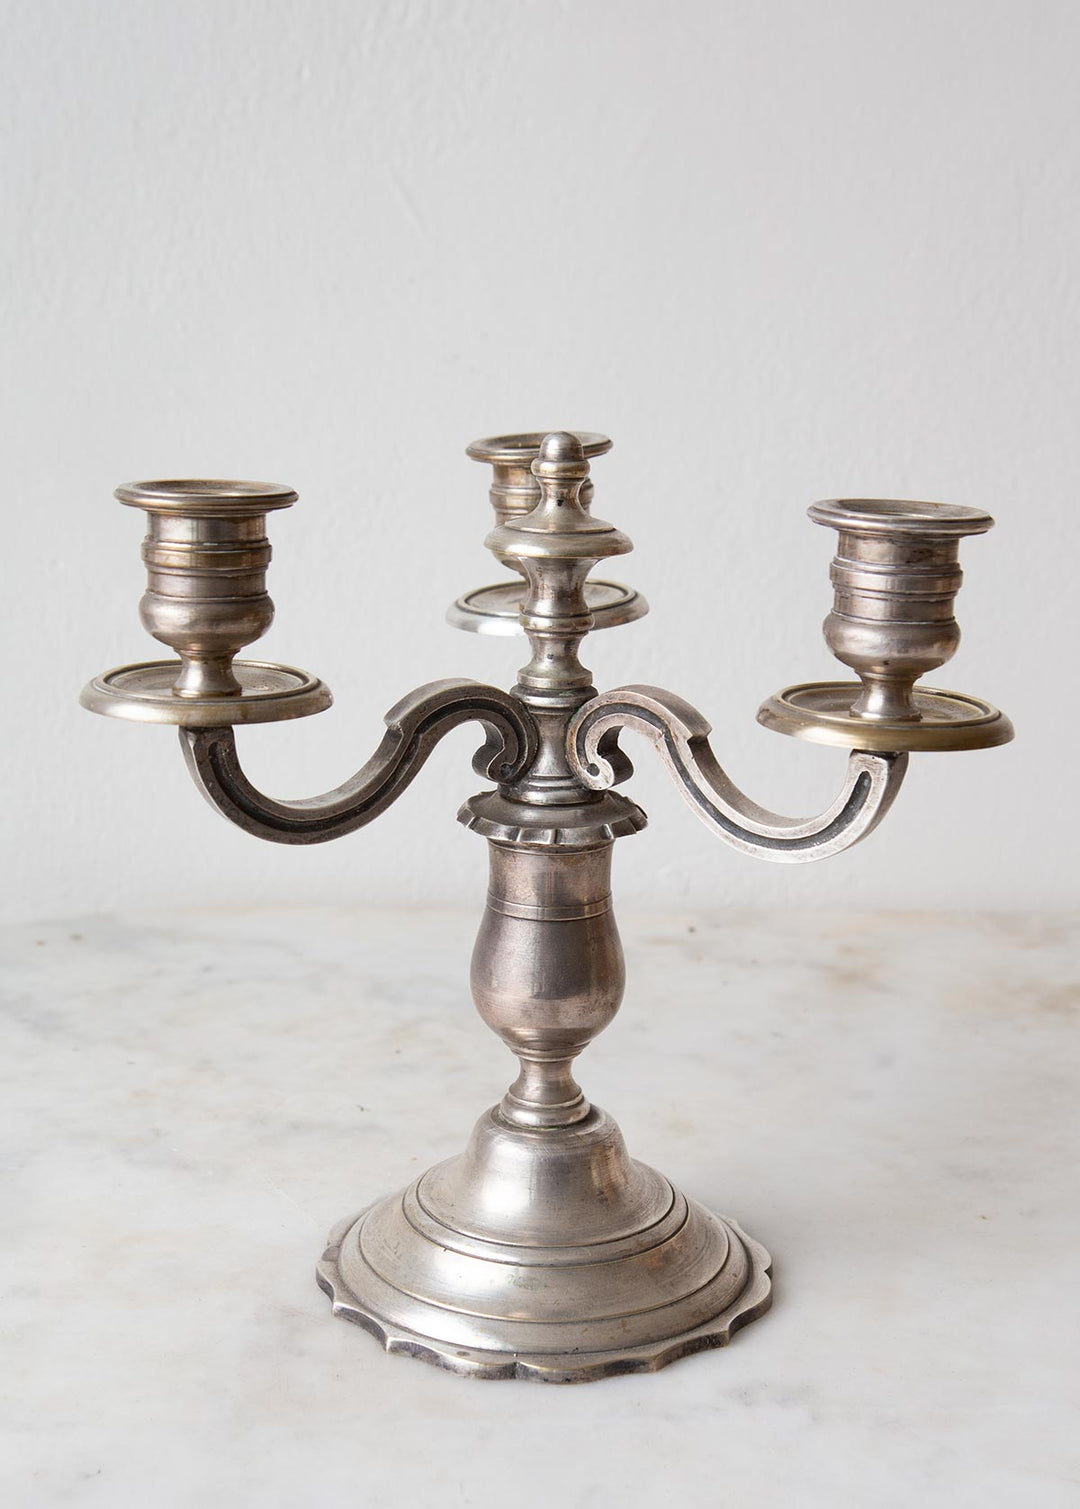 ntiguo candelabro francés bronce plateado antique french candelabre candleholder